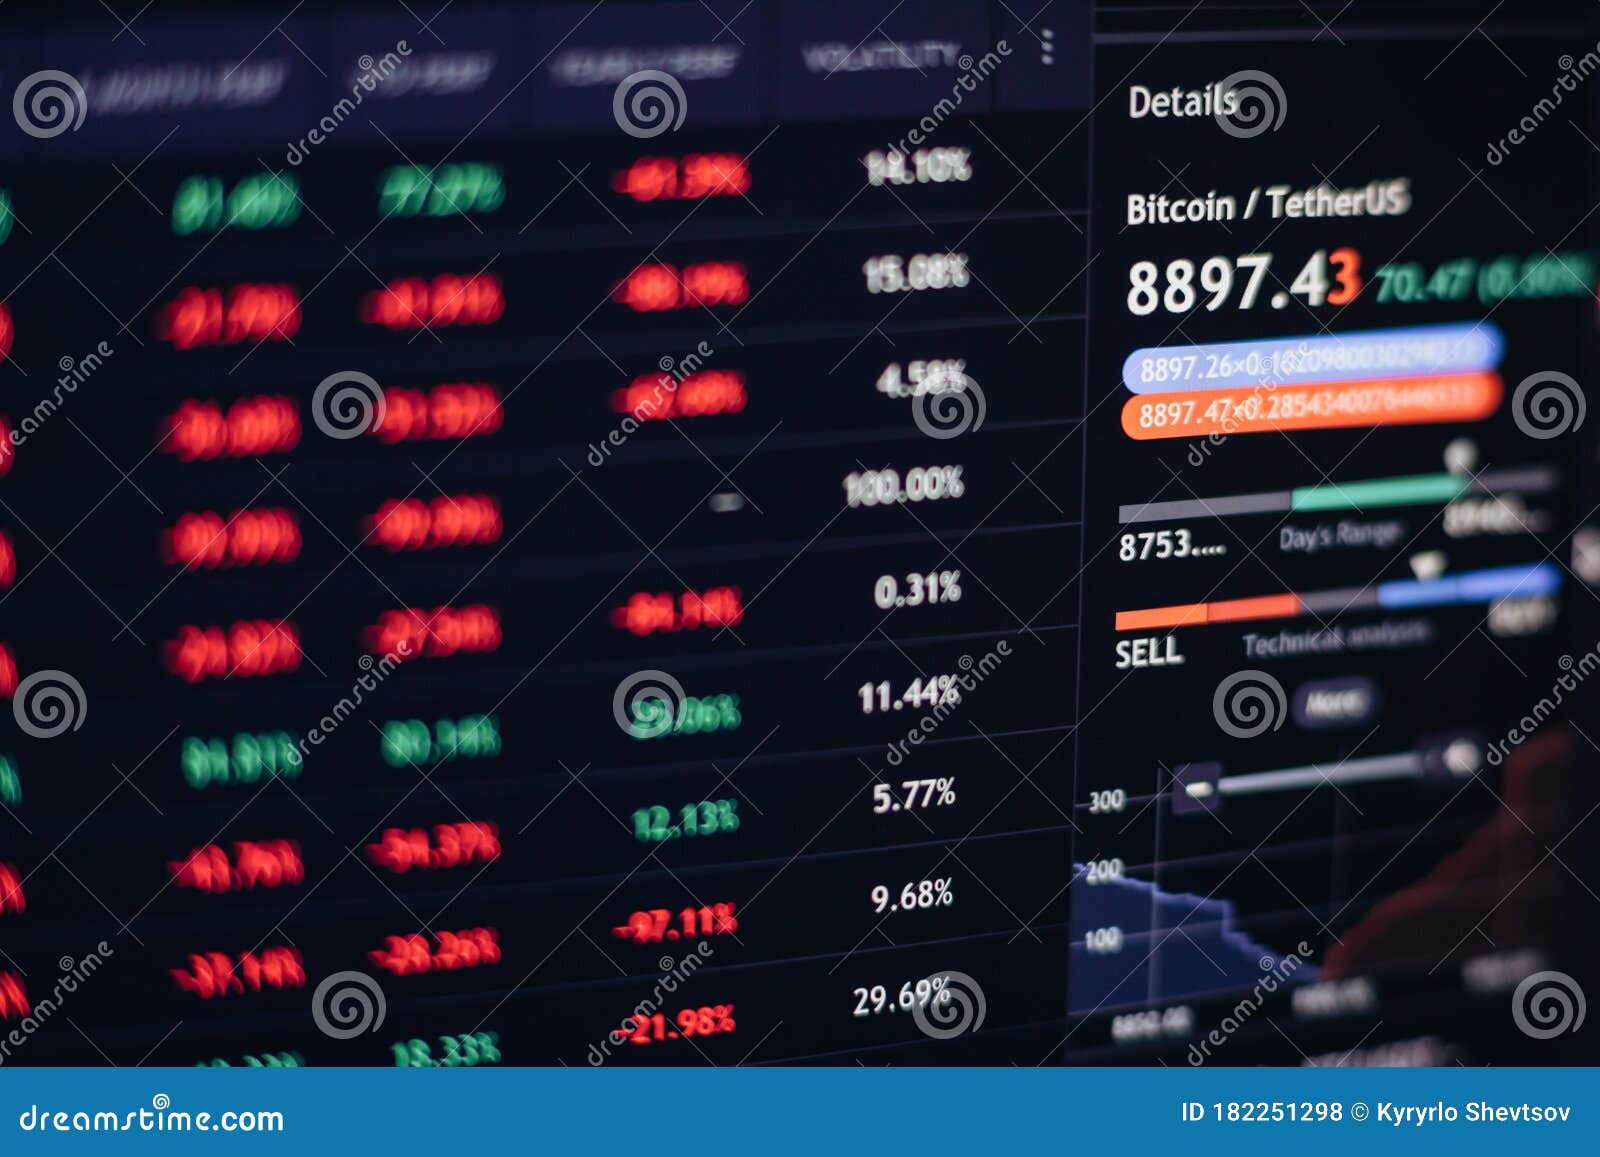 bitcoin trading analytics)